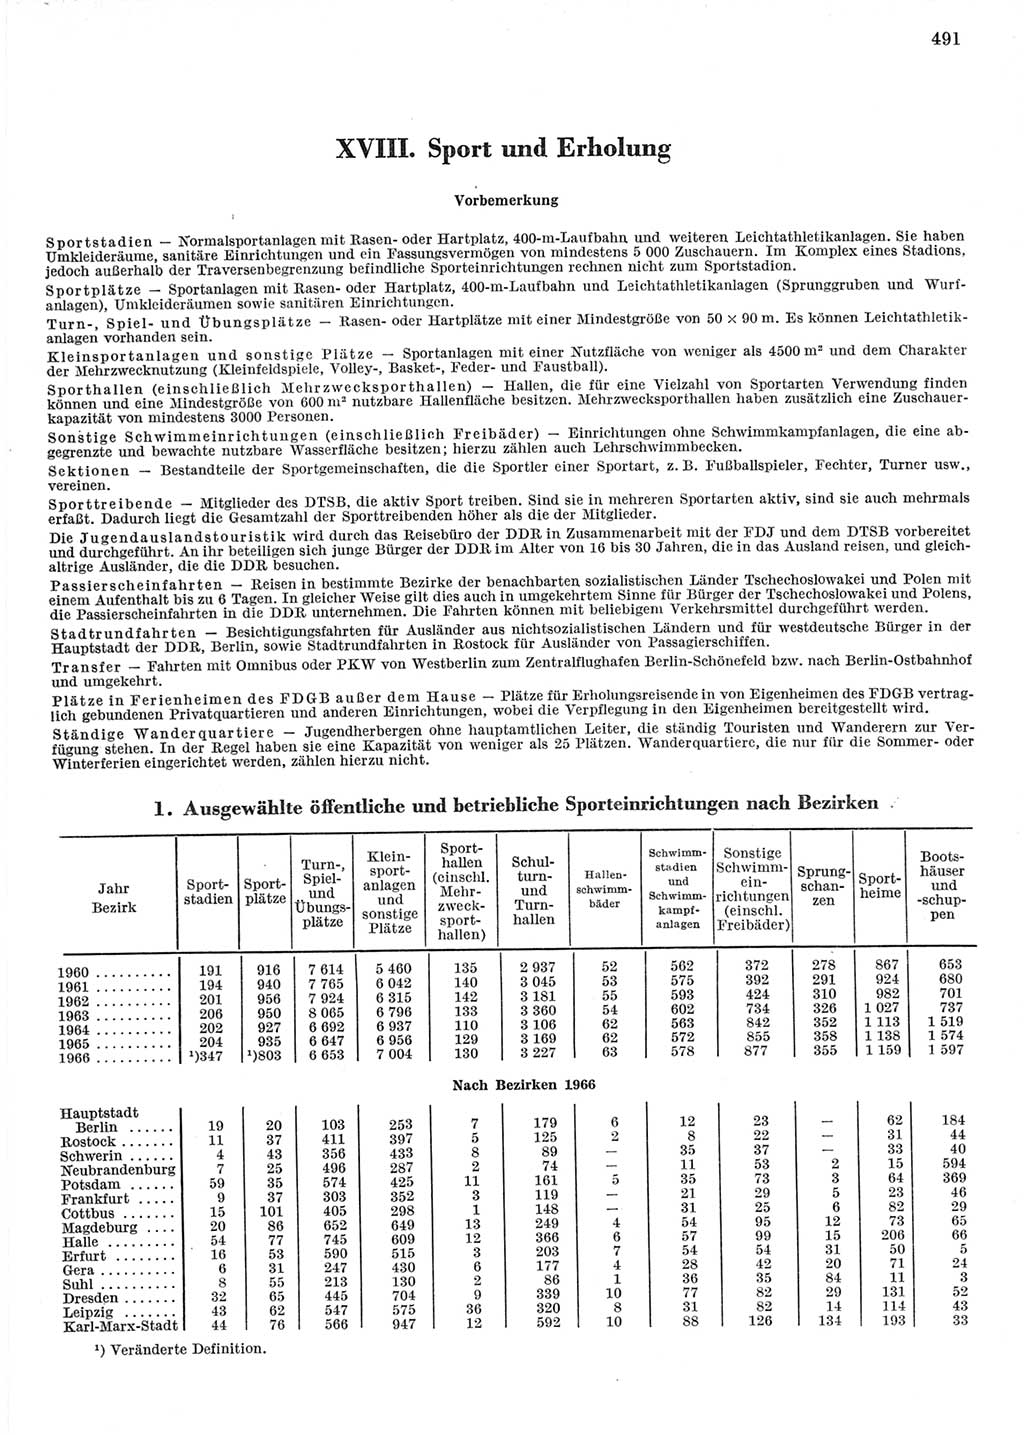 Statistisches Jahrbuch der Deutschen Demokratischen Republik (DDR) 1967, Seite 491 (Stat. Jb. DDR 1967, S. 491)